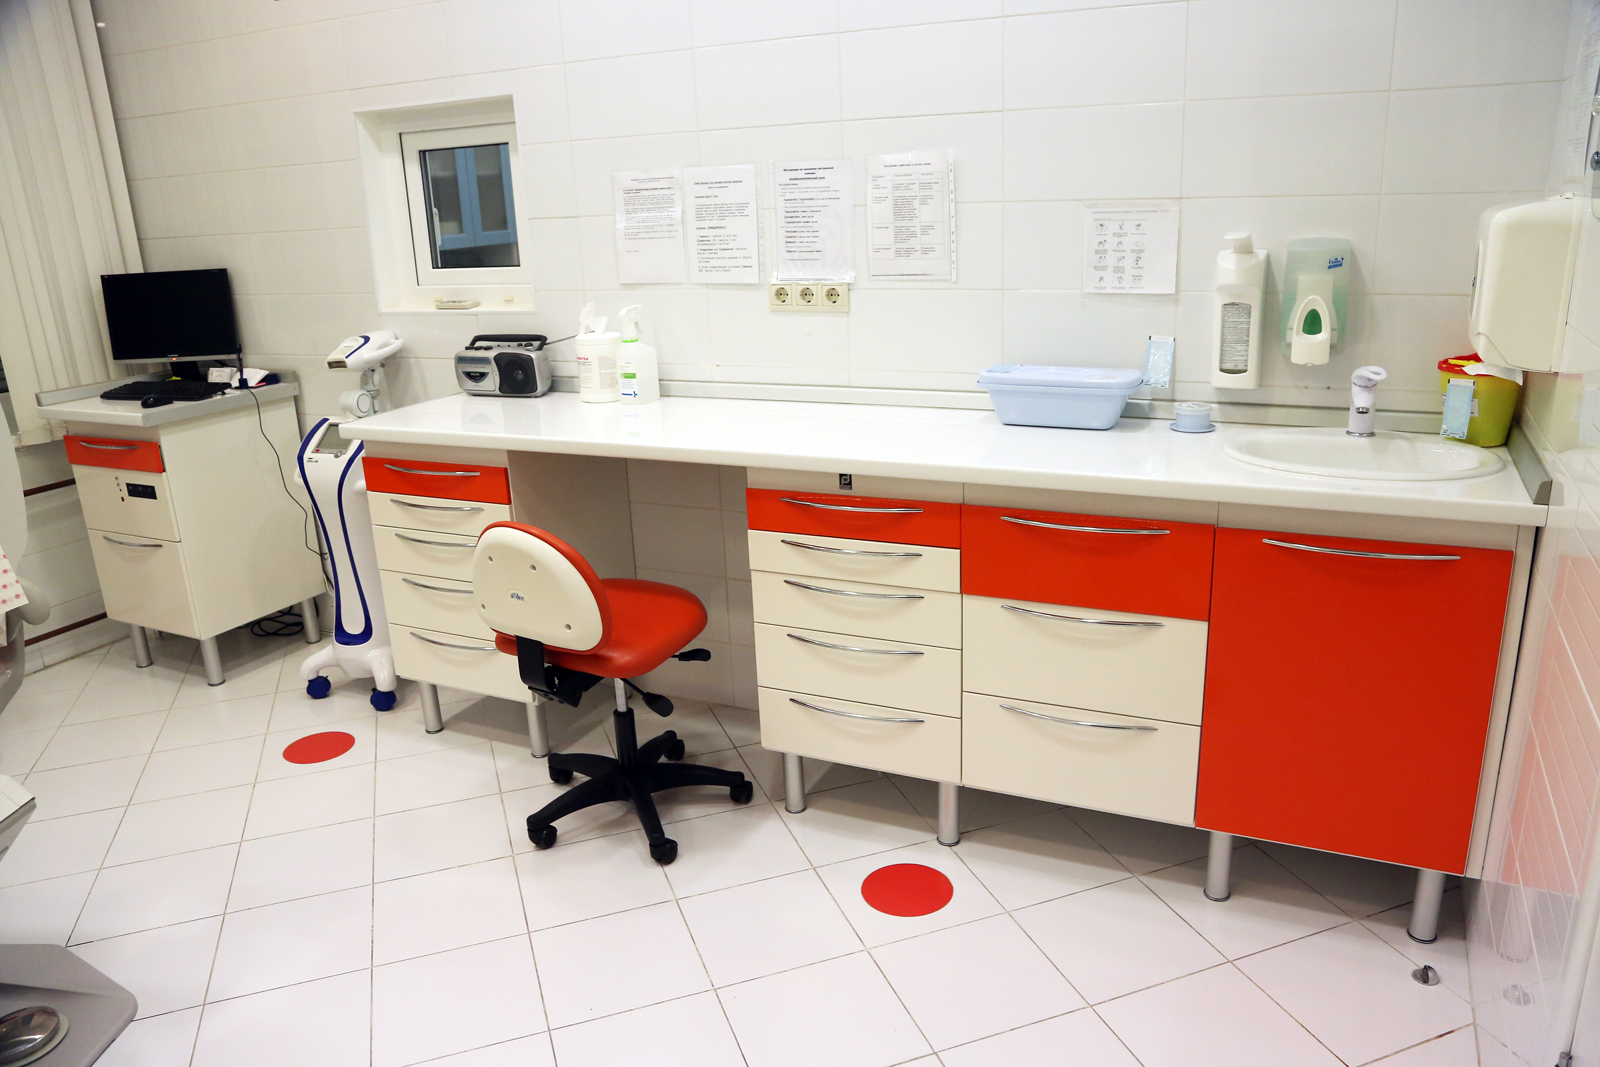 Медицинская мебель для медицинских учреждений